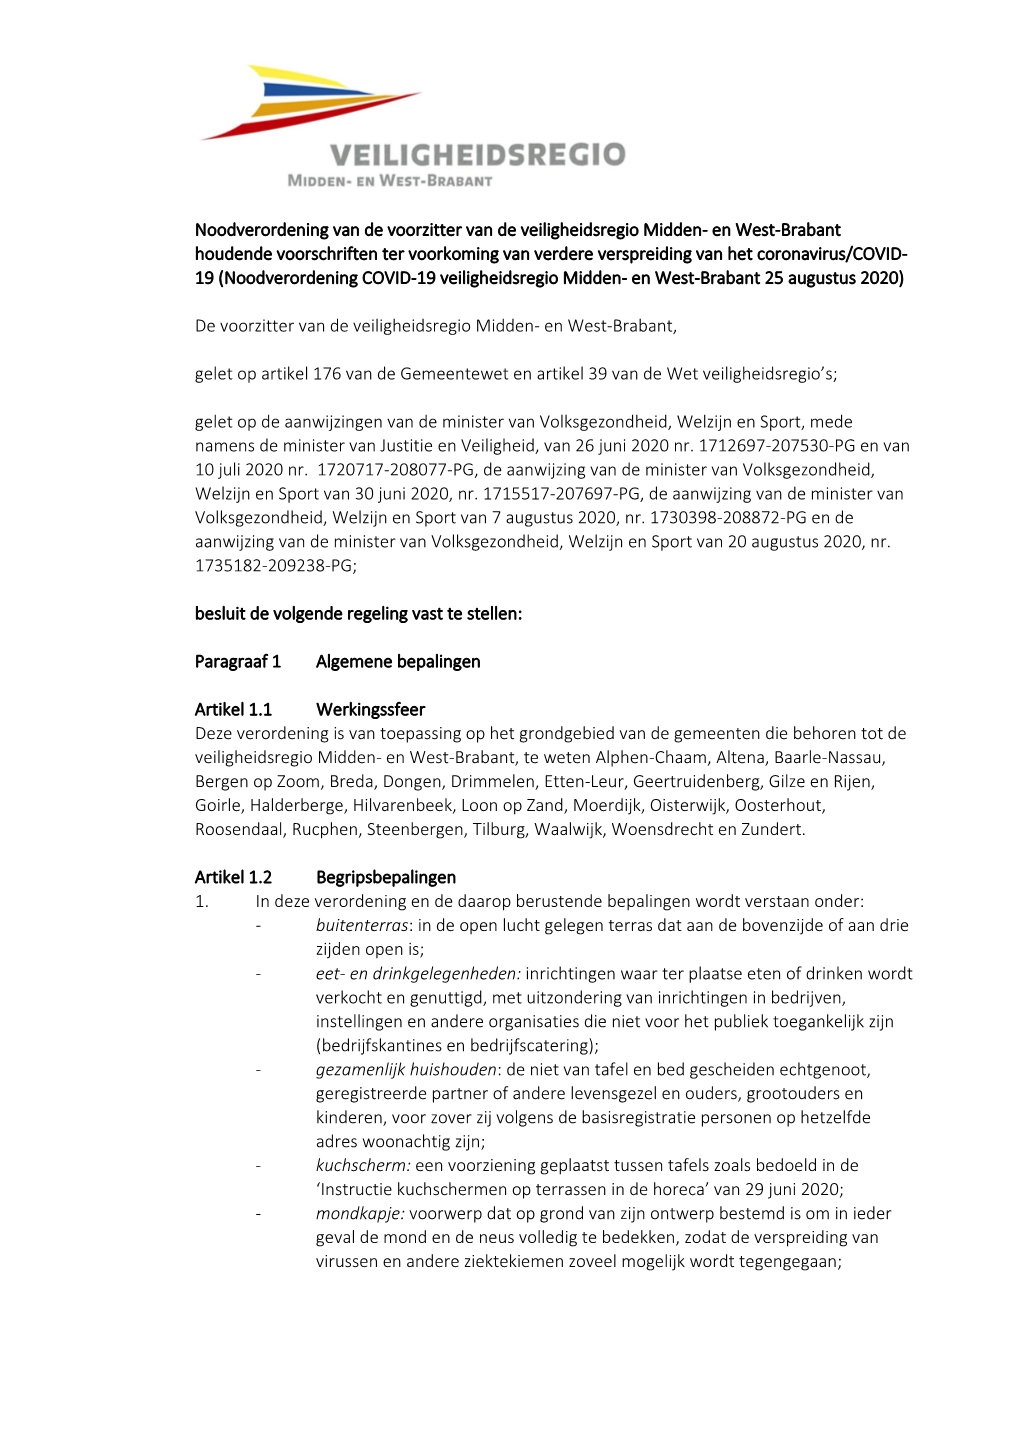 Noodverordening COVID-19 Veiligheidsregio Midden- En West-Brabant 25 Augustus 2020)